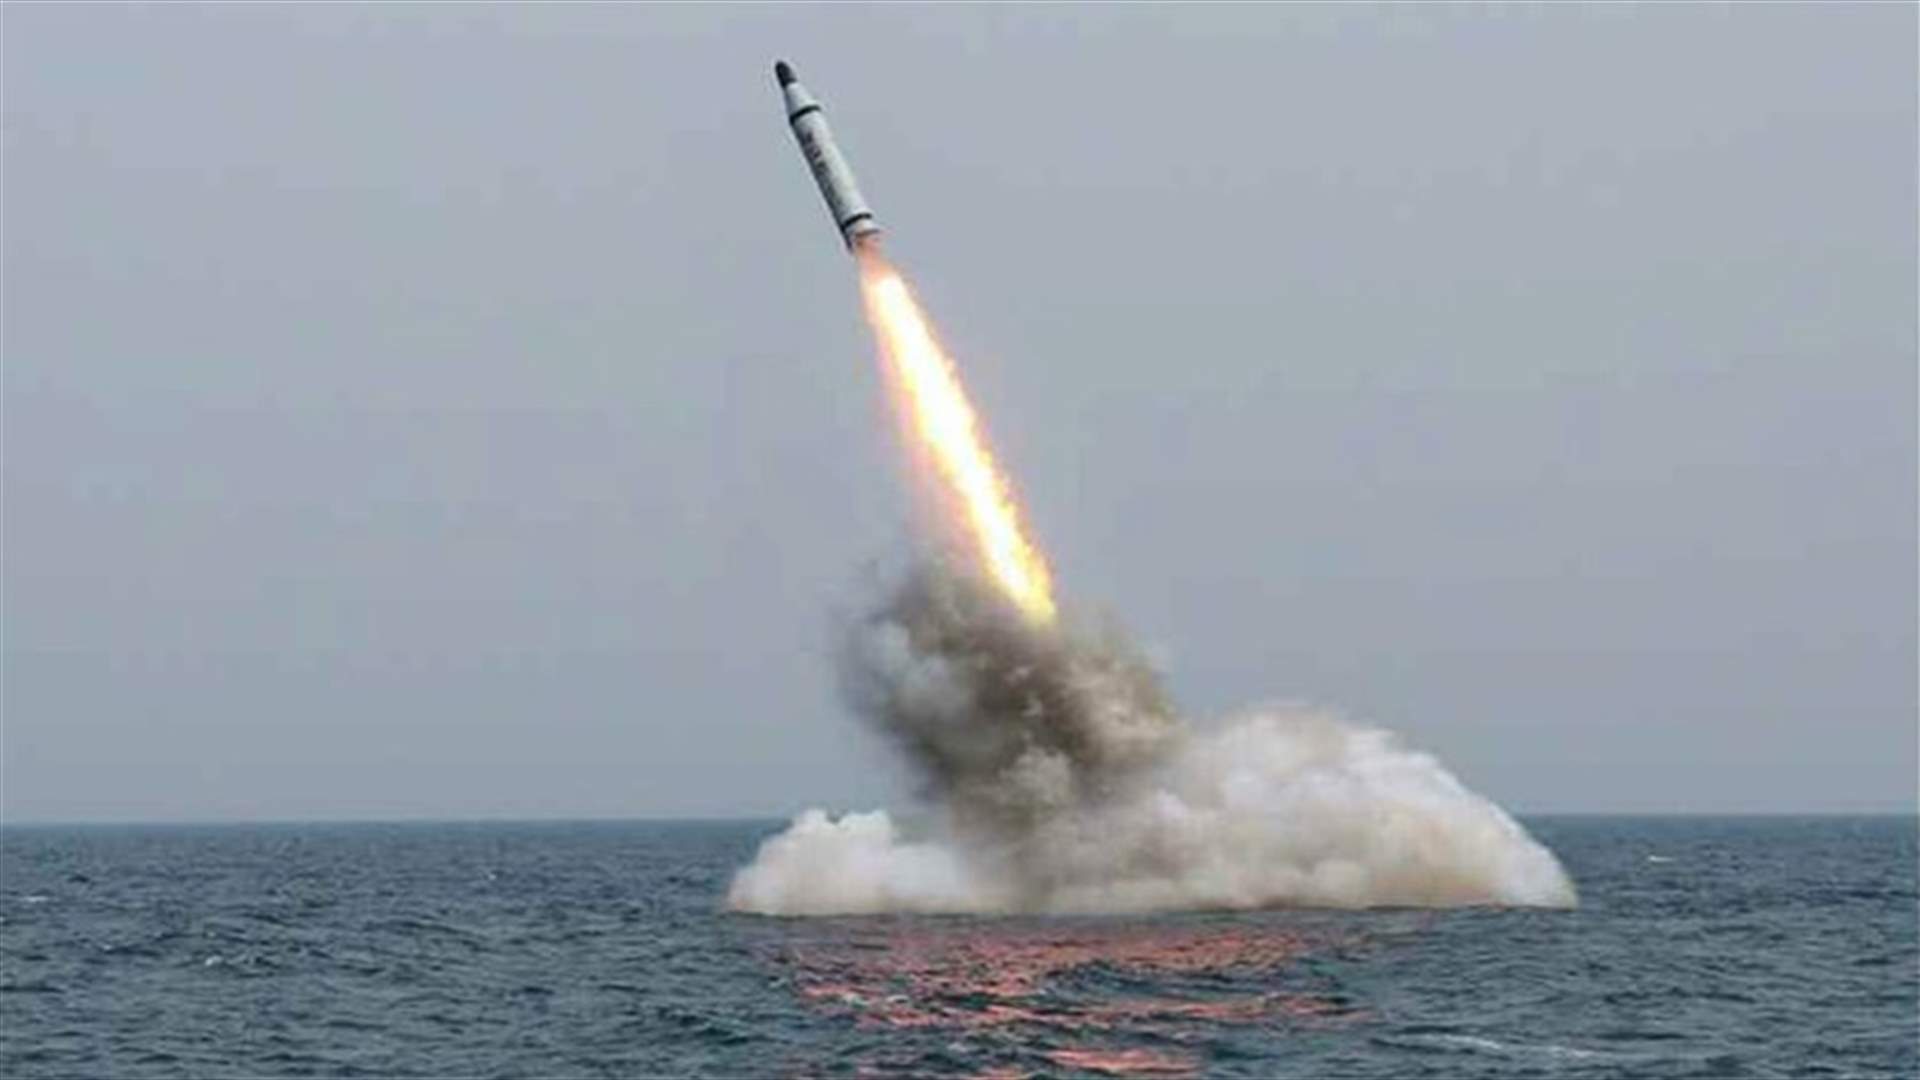 كوريا الشمالية أطلقت صاروخا قبالة سواحلها الشرقية... والجيش الأميركي يندد